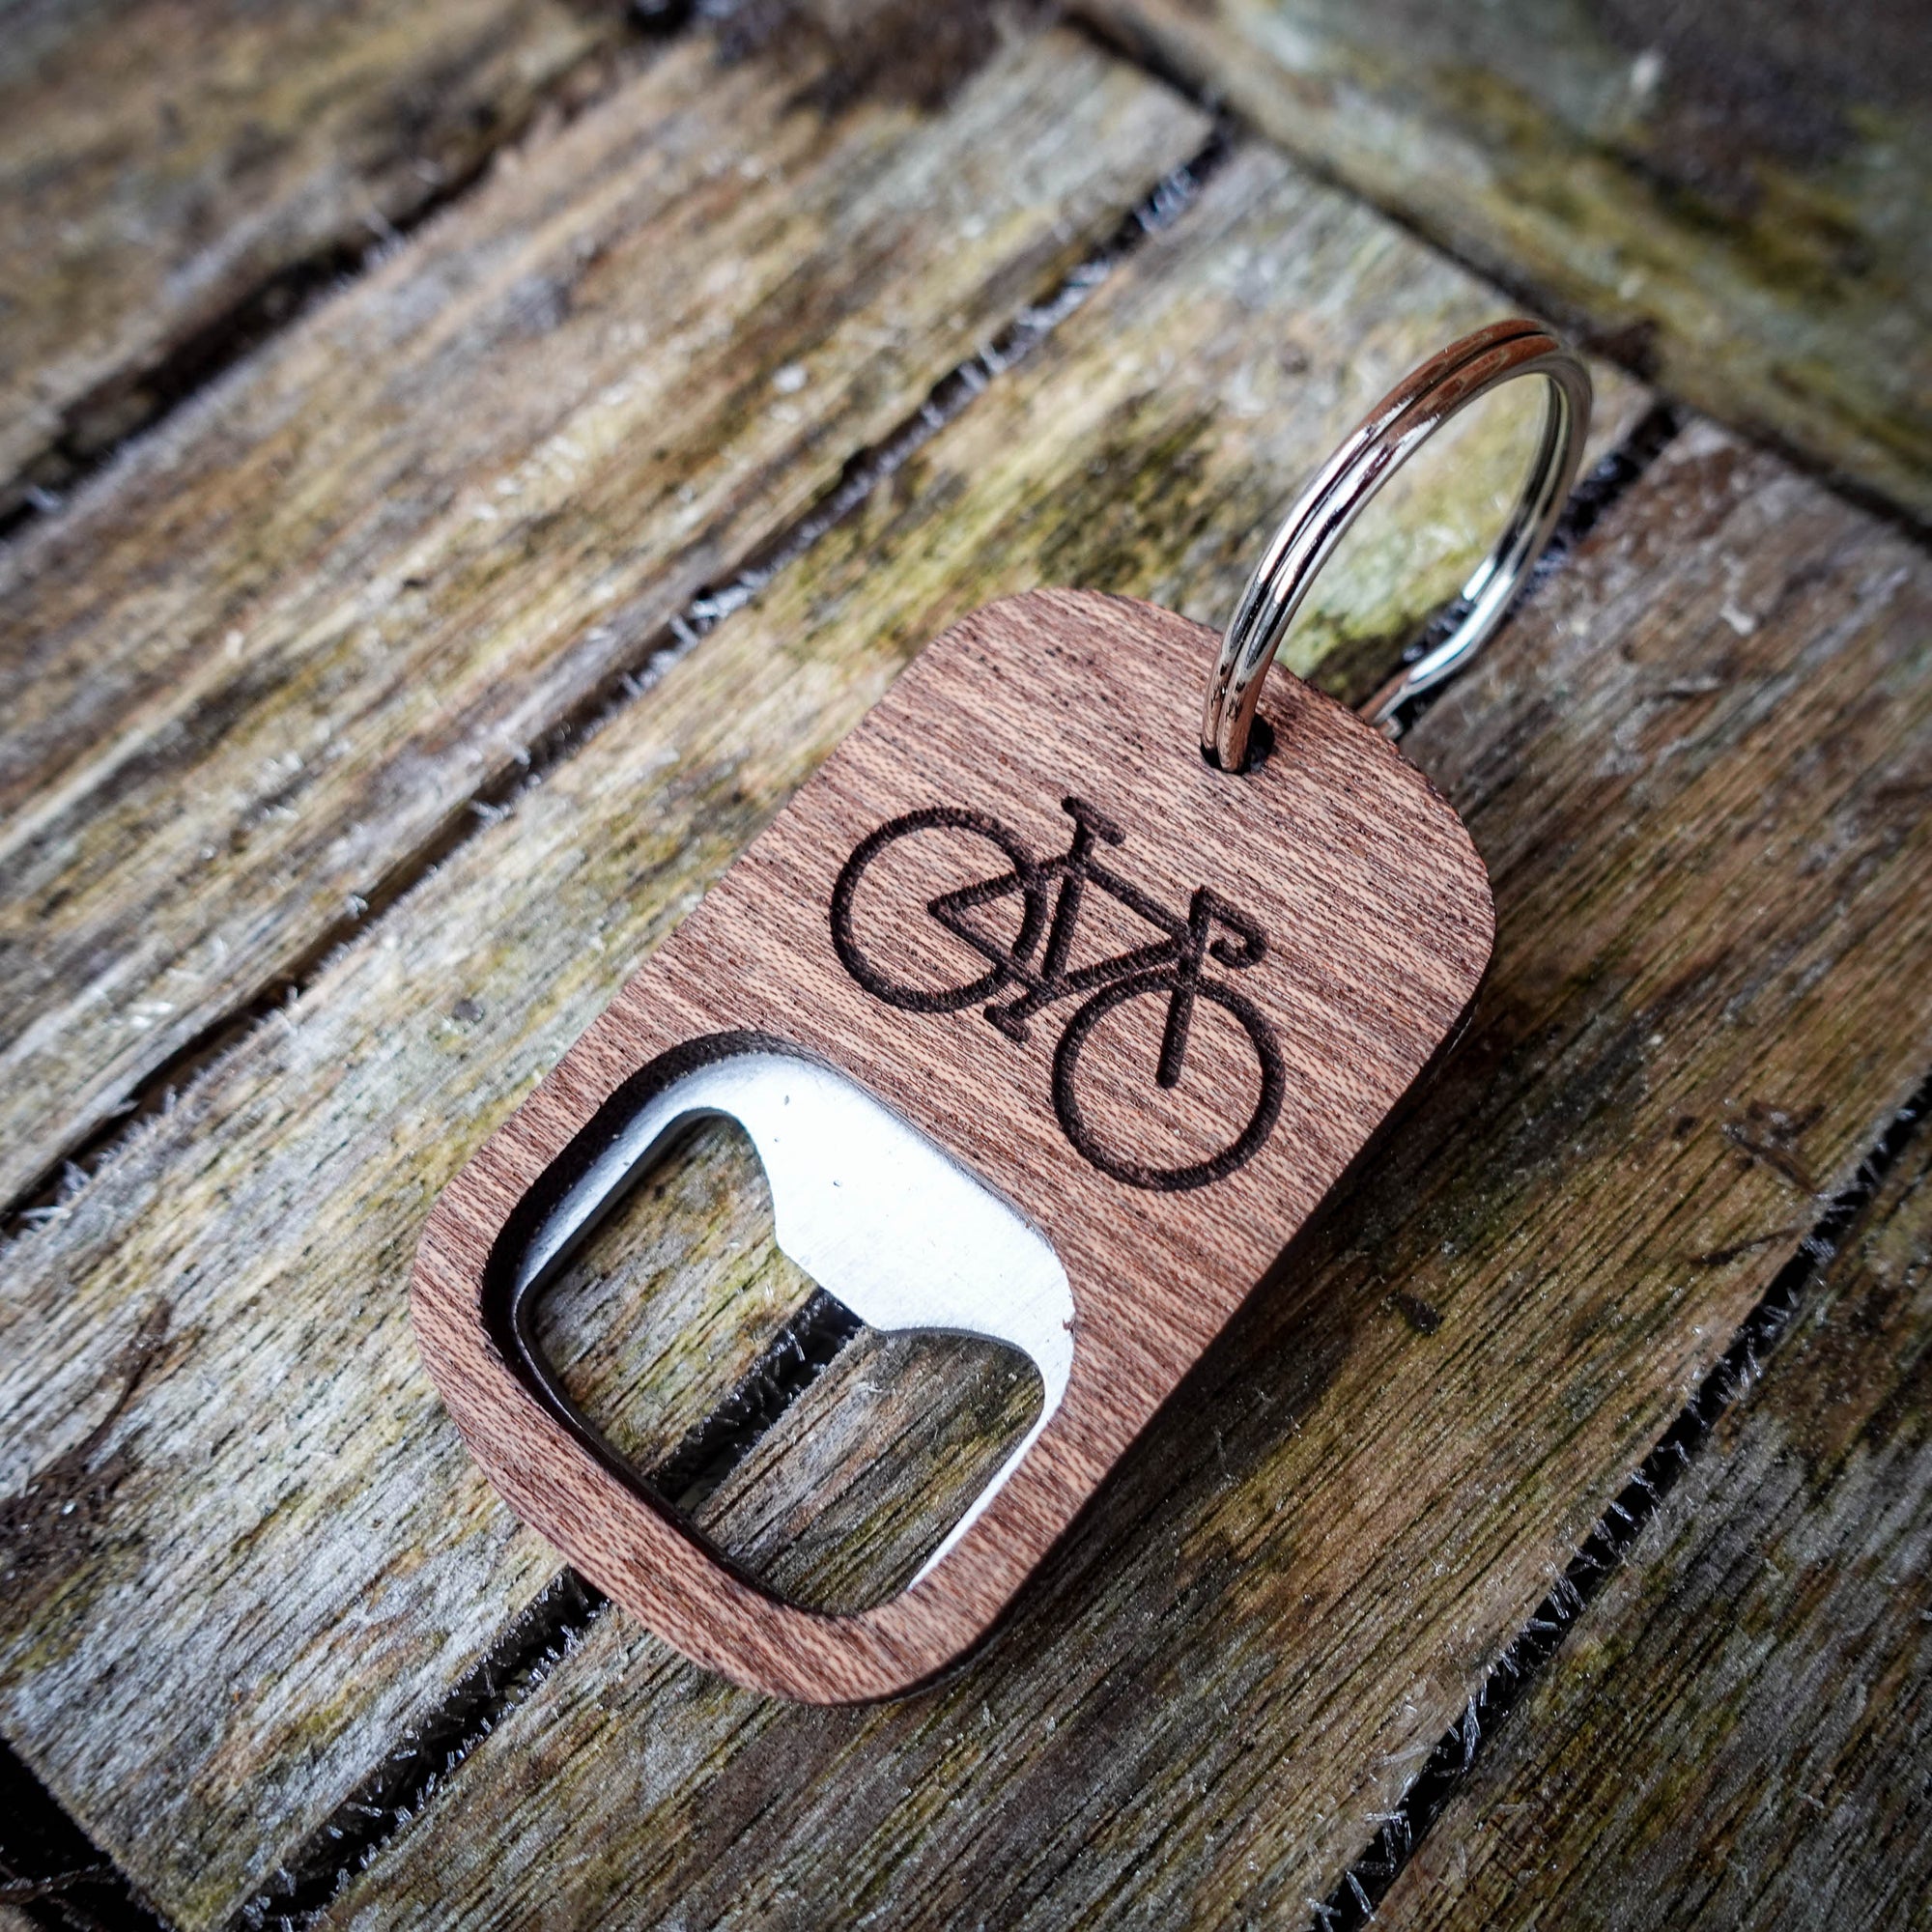 Wooden Bike Bottle Opener Key Ring